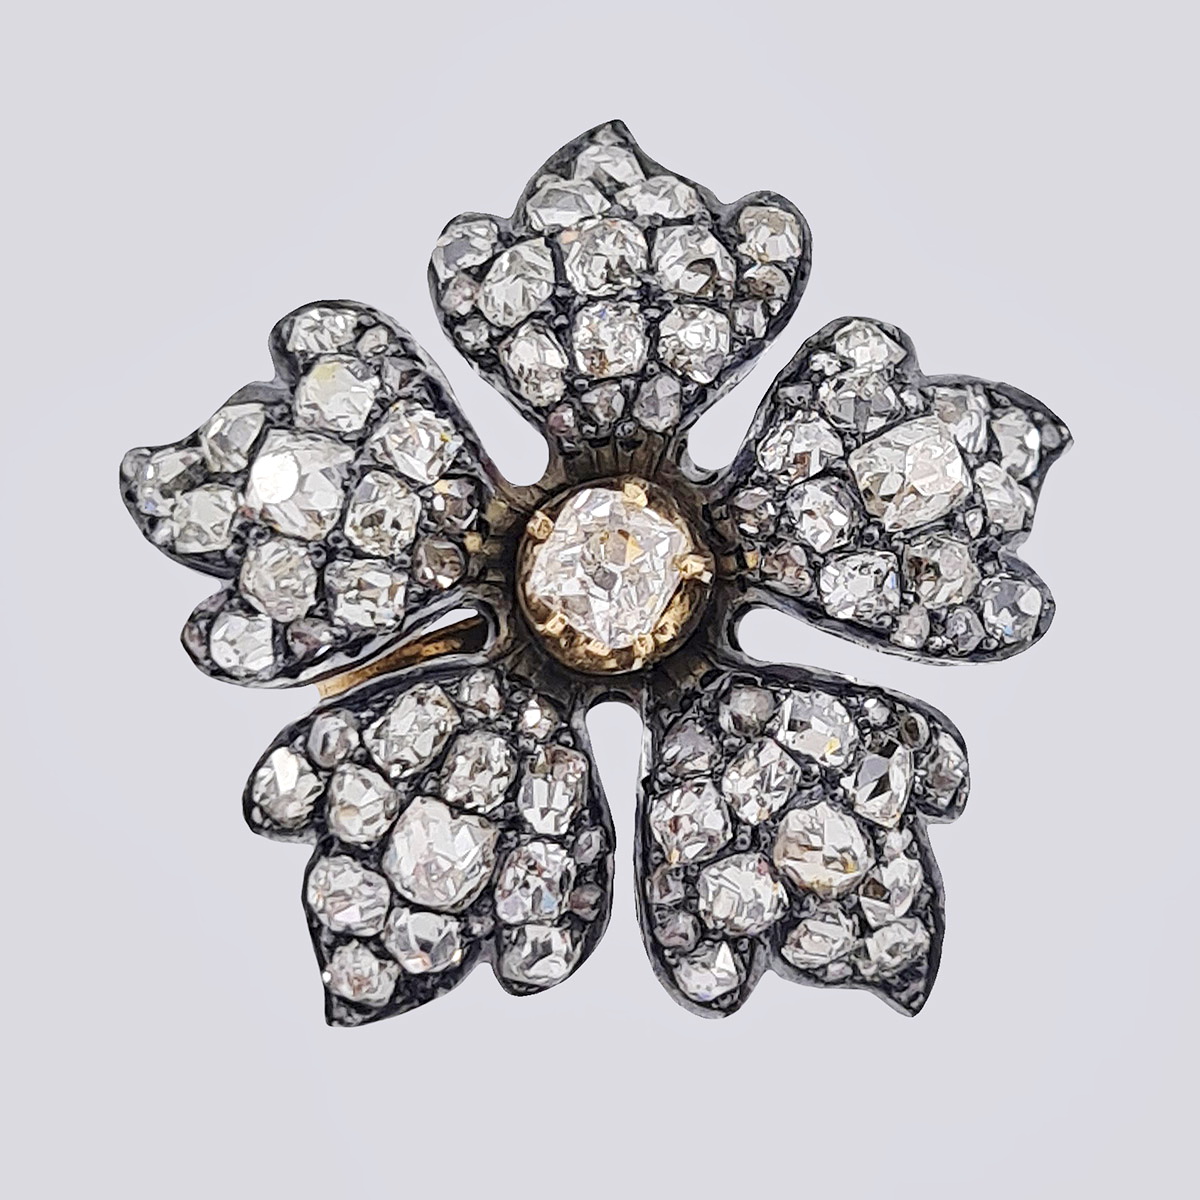 Подвеска «Цветок» антикварная золотая 56 пробы с бриллиантами старой огранки и алмазами